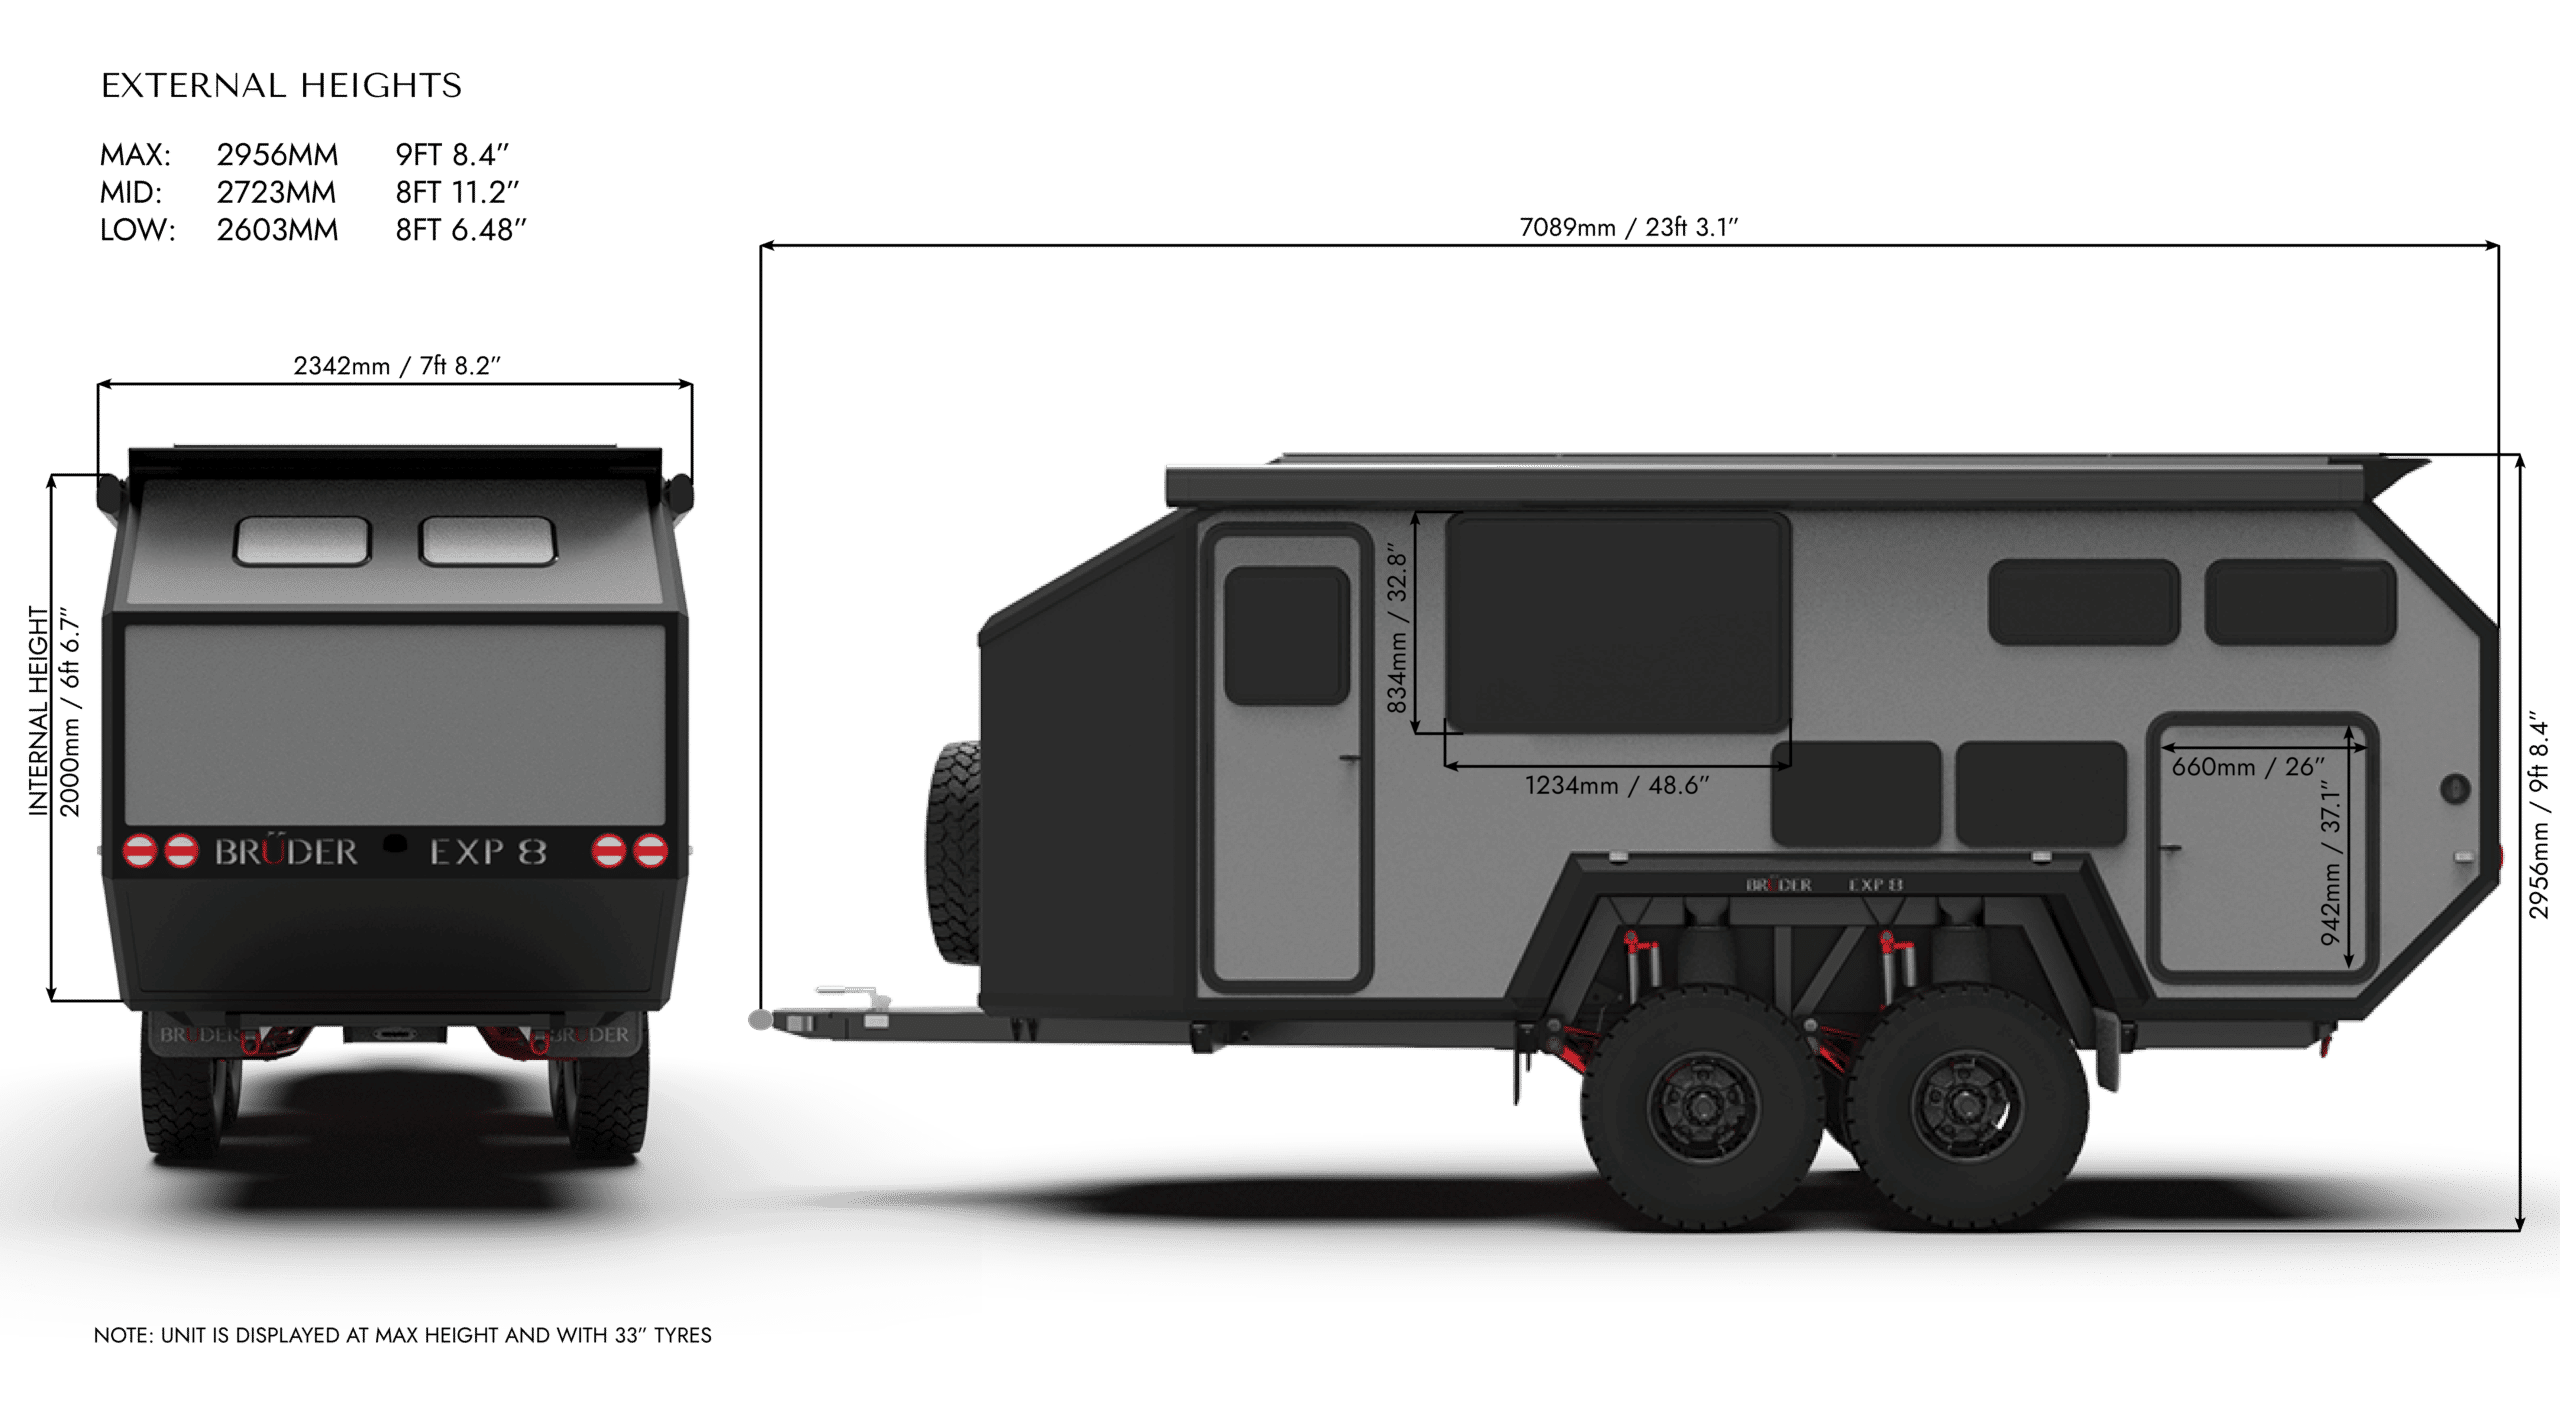 Bruder EXP-8 Is the Ultimate Off-Road Camper Trailer for Overlanding